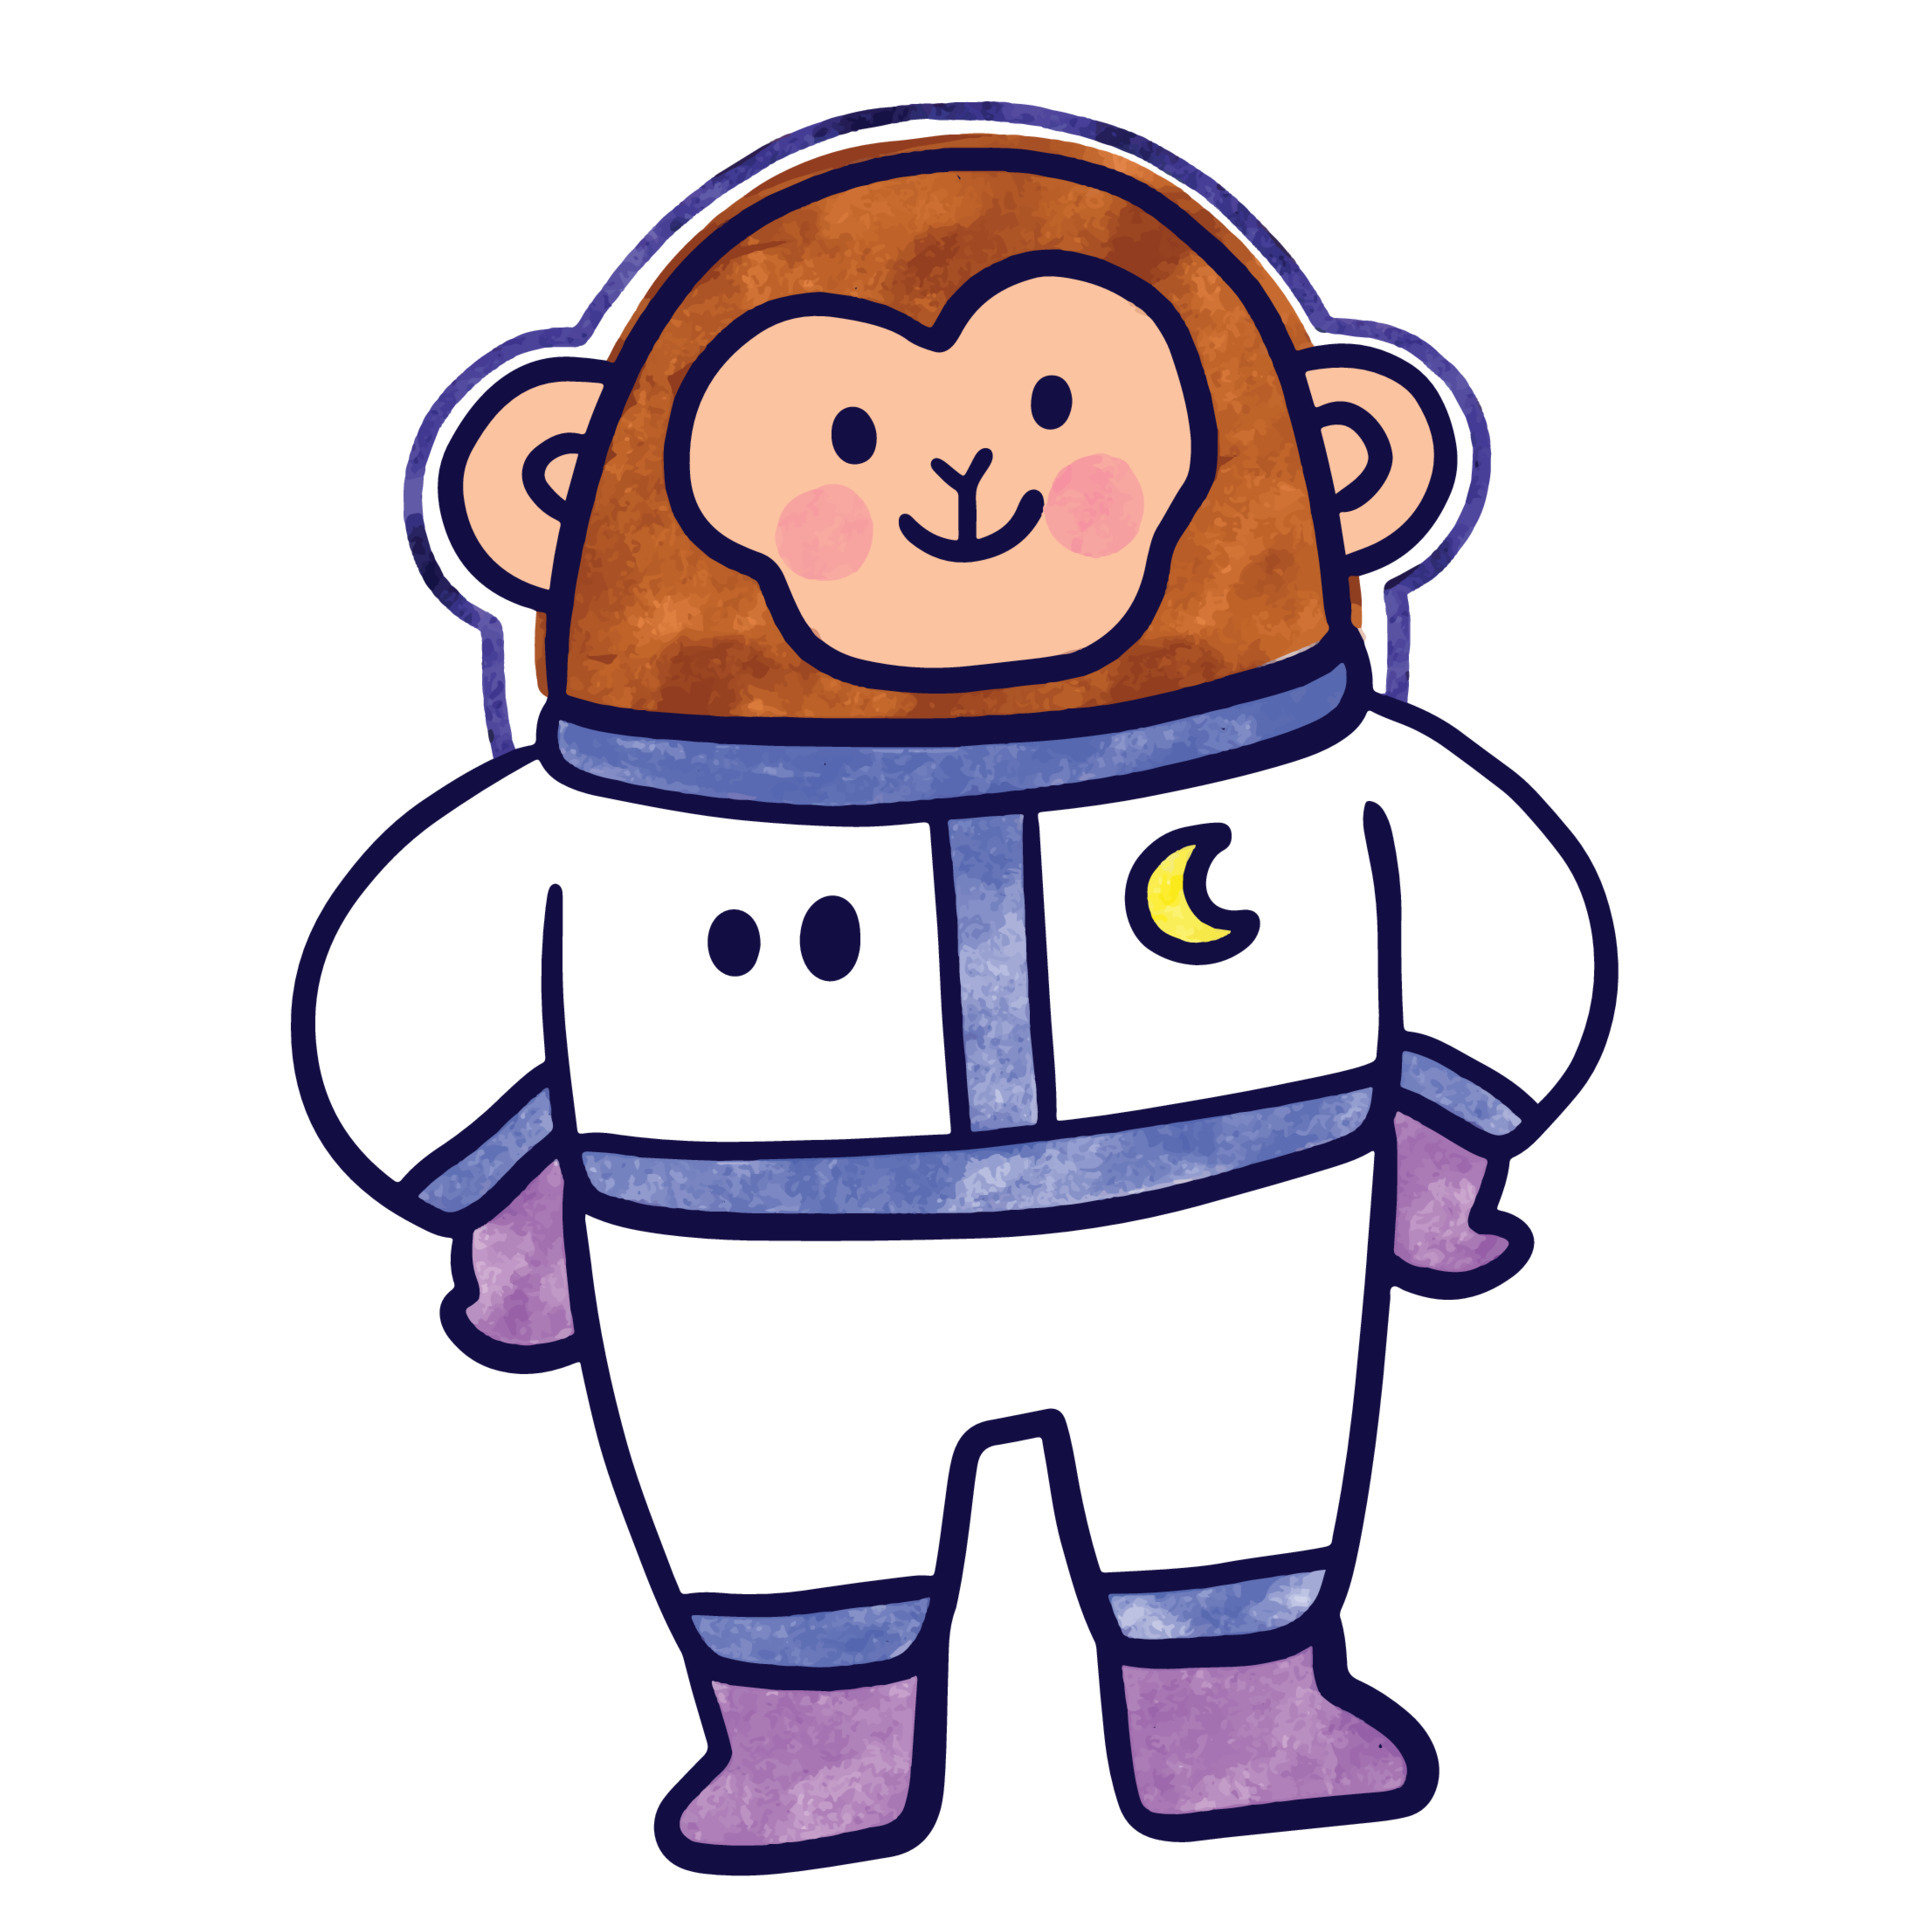 Dibujos animados flotantes lindo mono astronauta